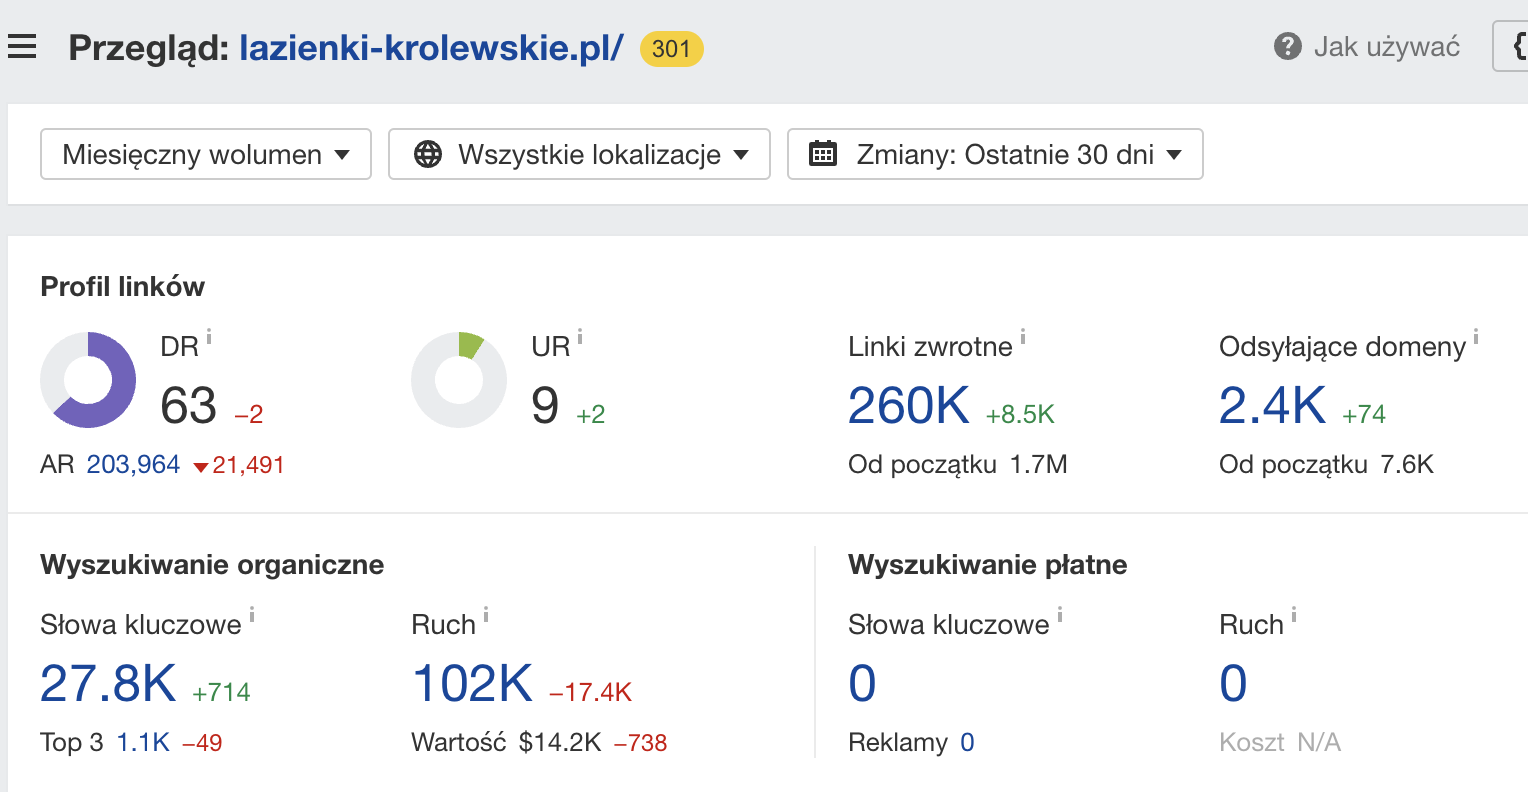 lazienki-krolewskie.pl: informacje o domenie